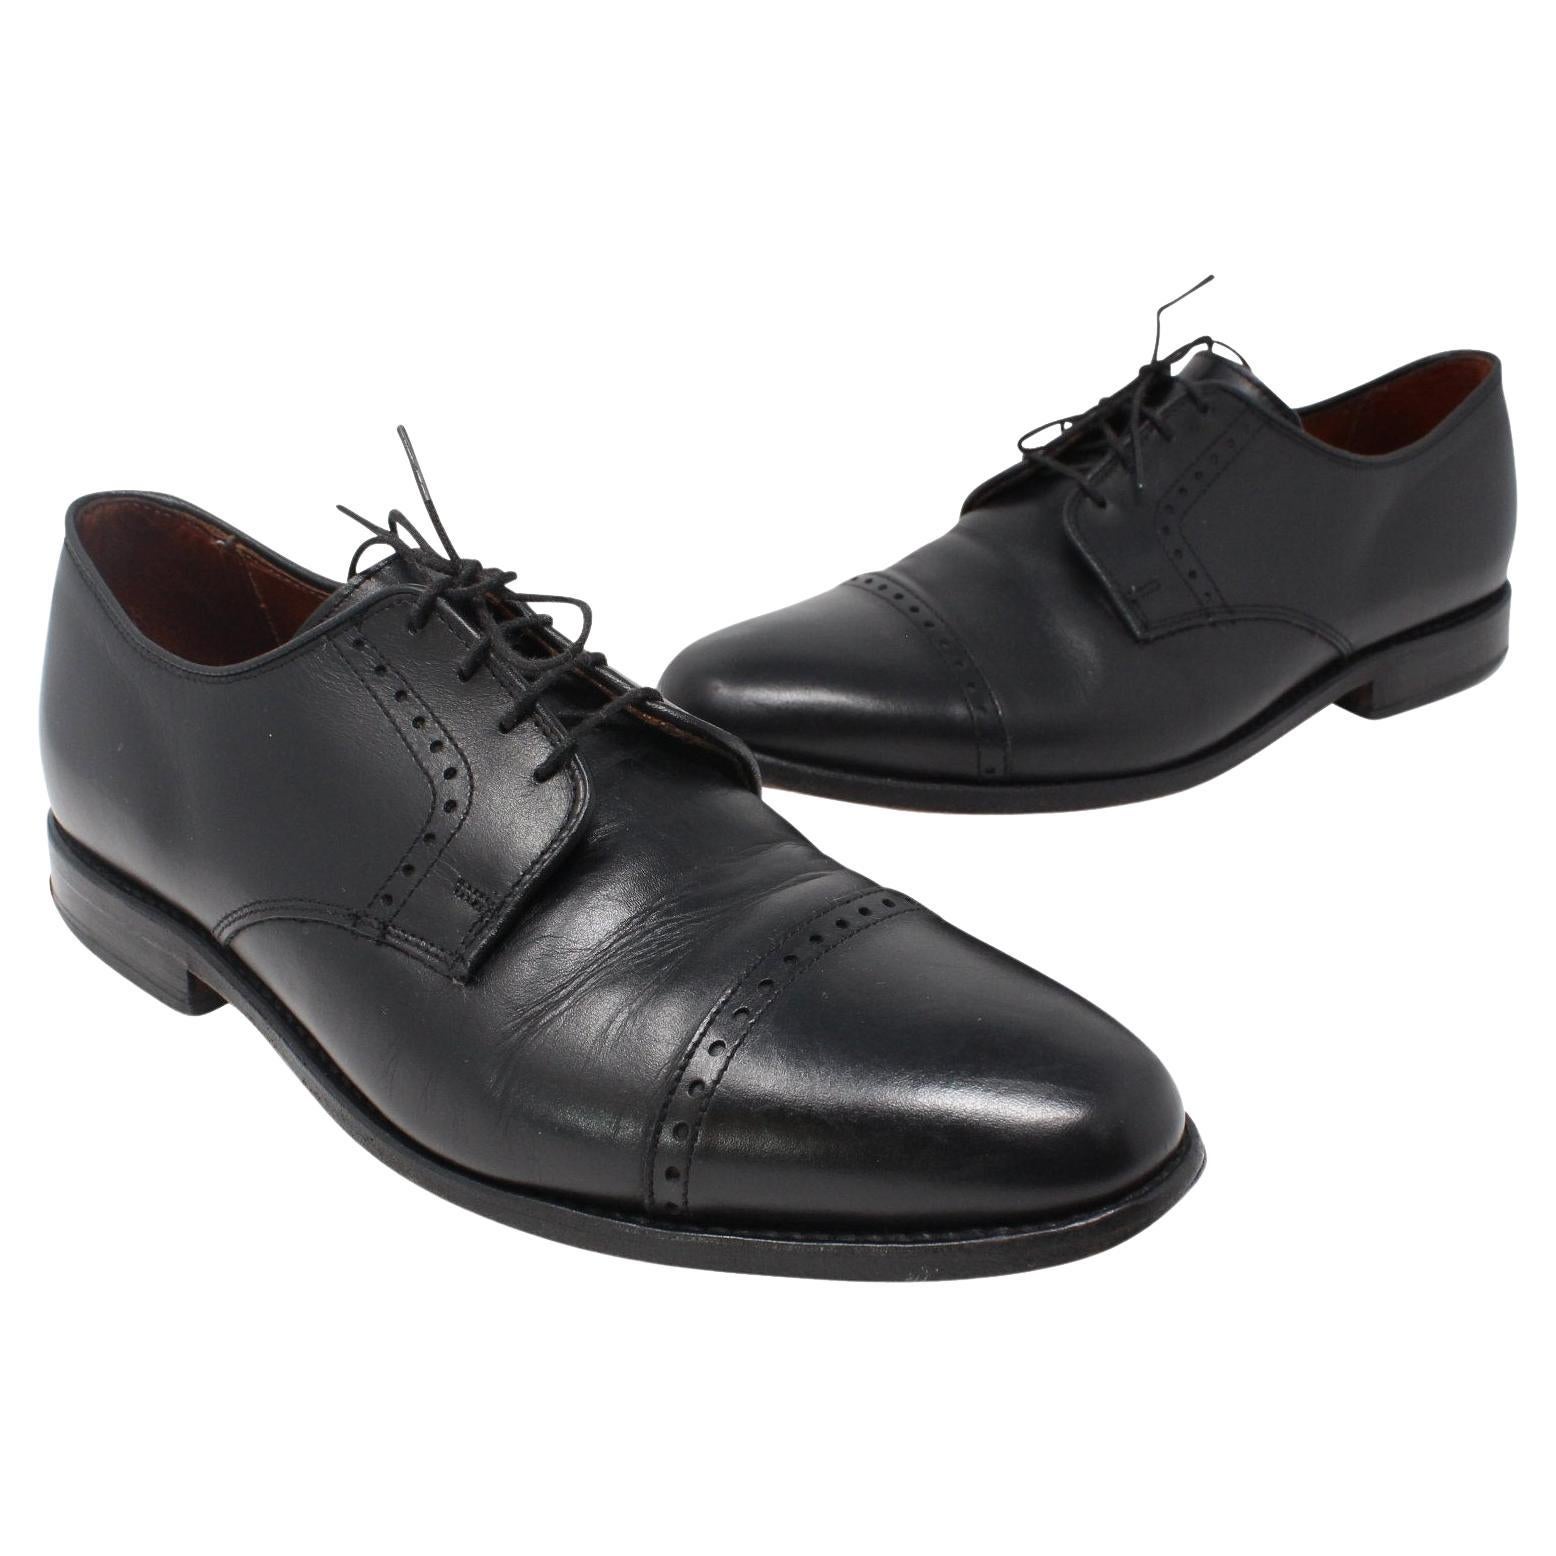 Allen Edmonds - Chaussures classiques à bout ouvert en cuir pour homme, taille 10 D